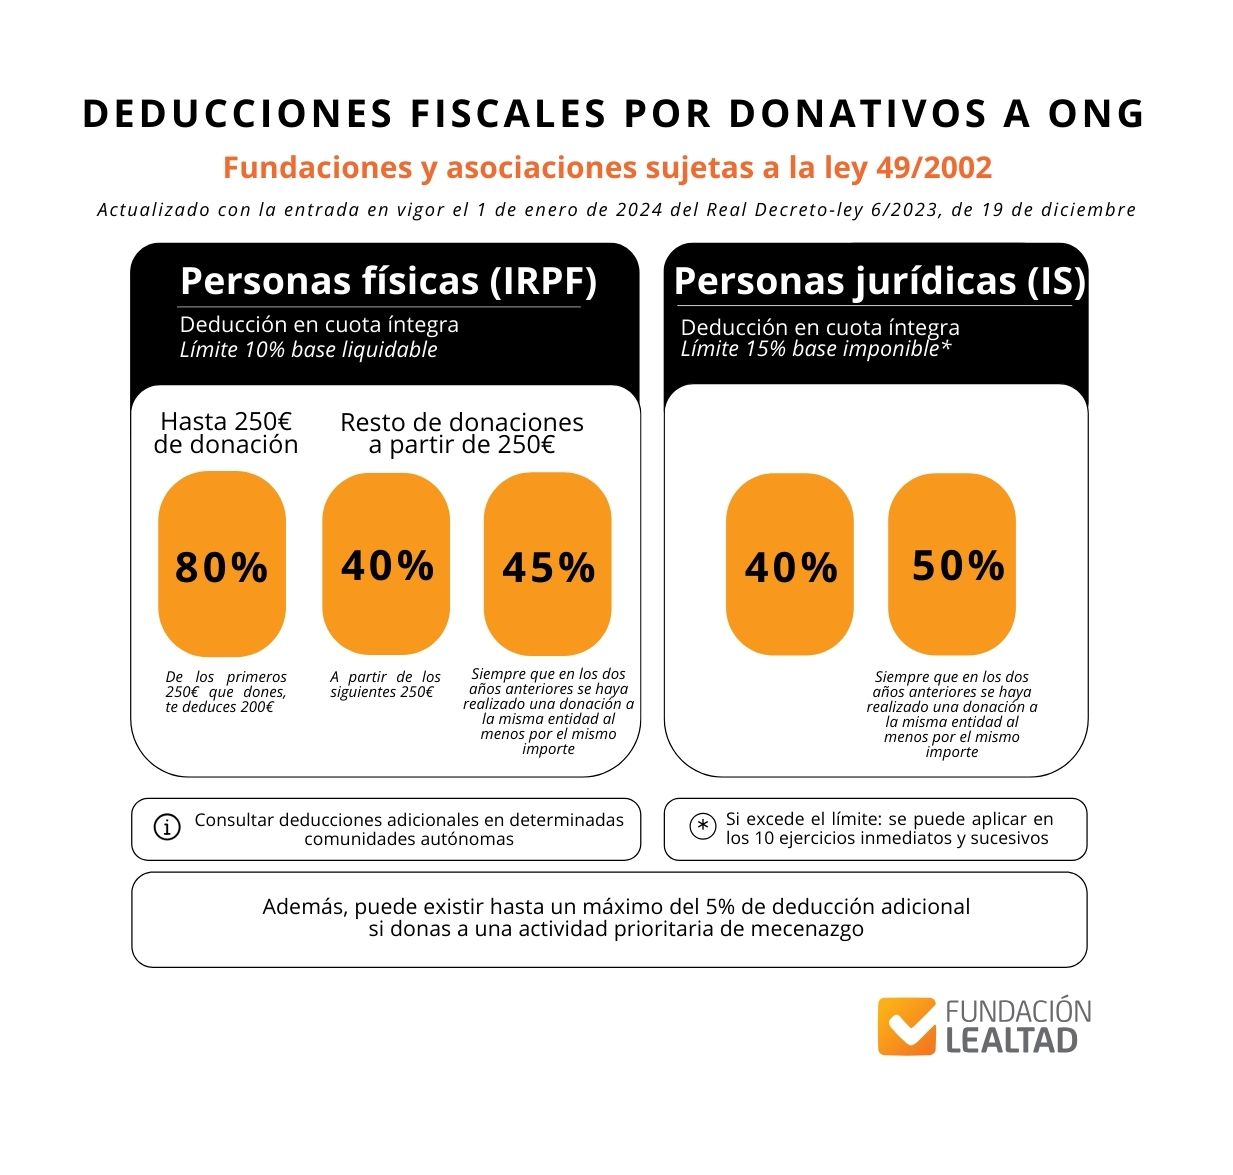 Deducciones fiscales donativos ONG Fundación Lealtad_